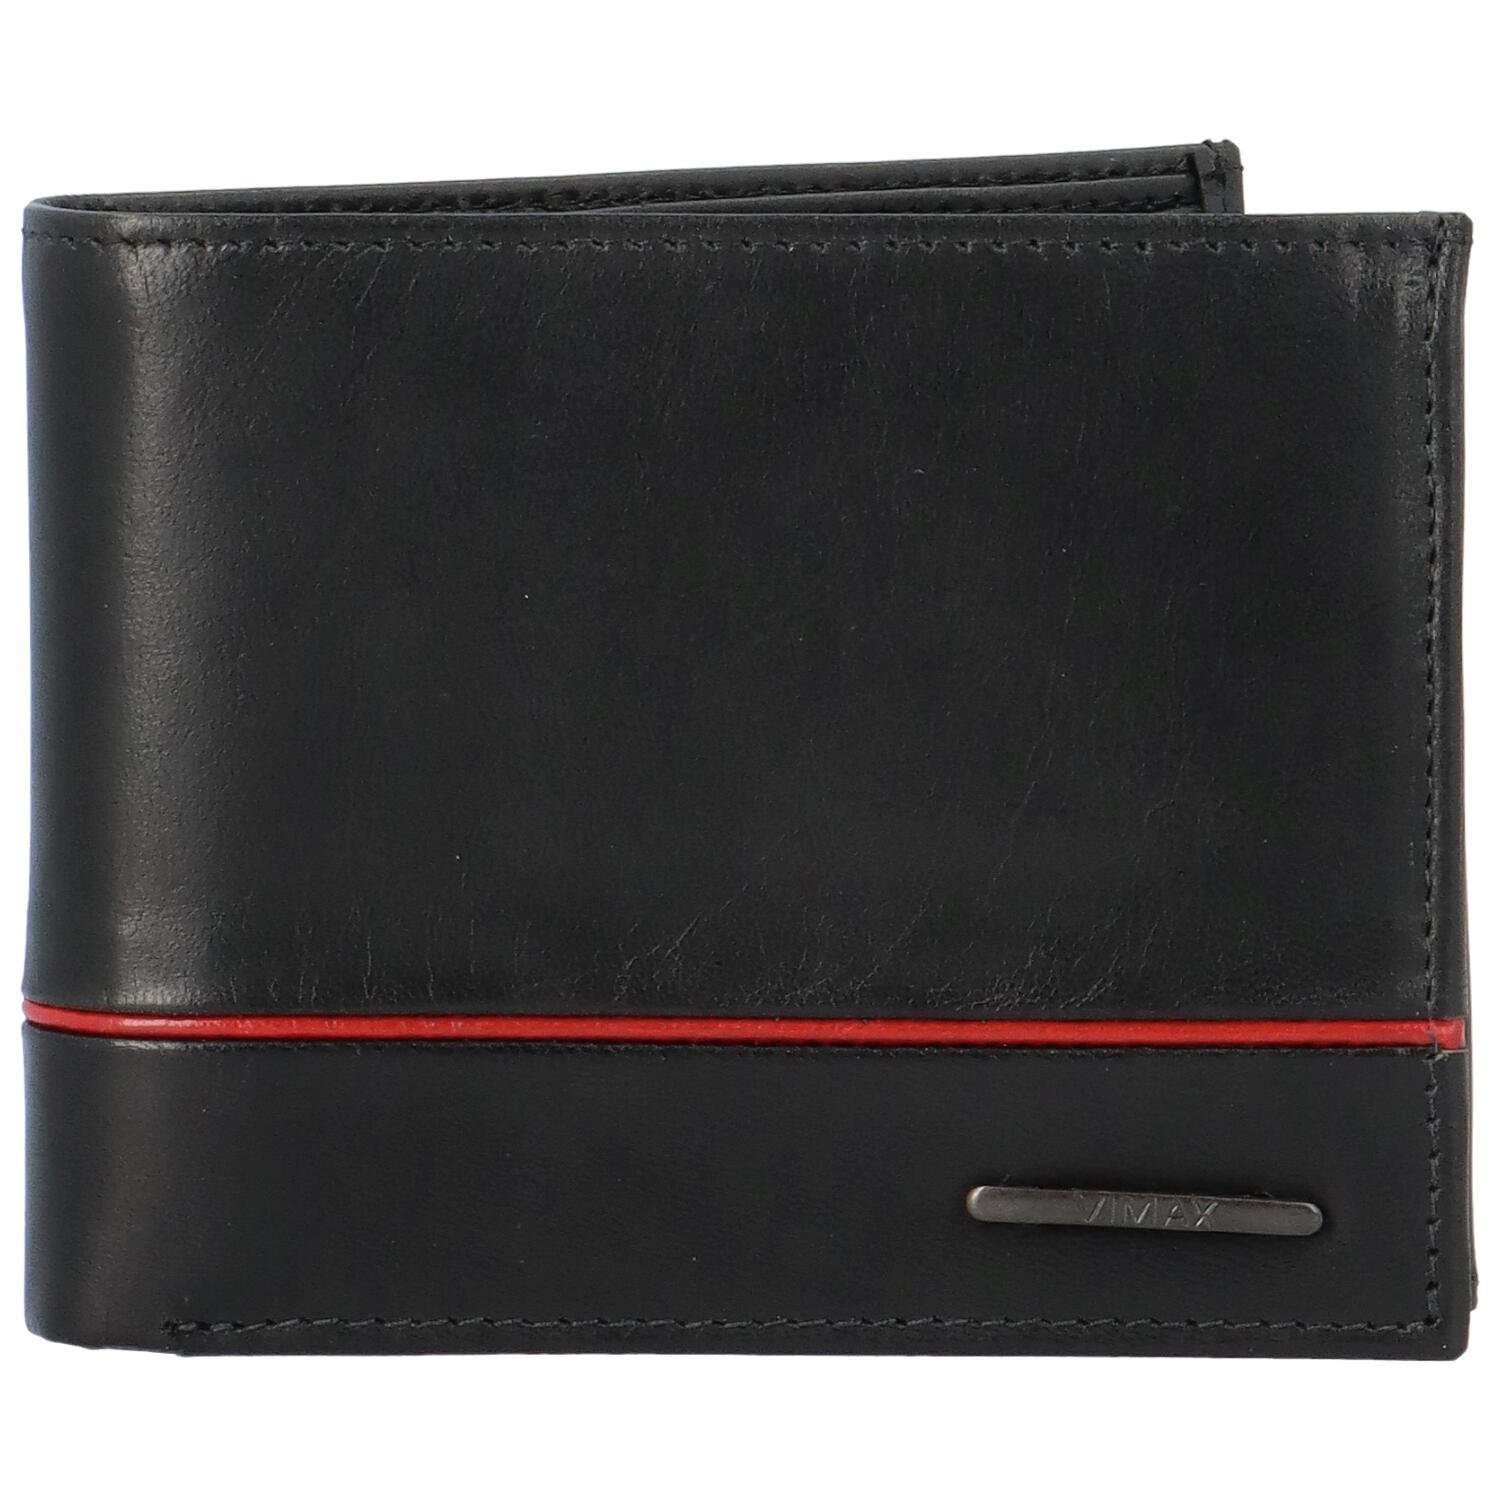 Pánská kožená peněženka černá - Vimax Willy černá